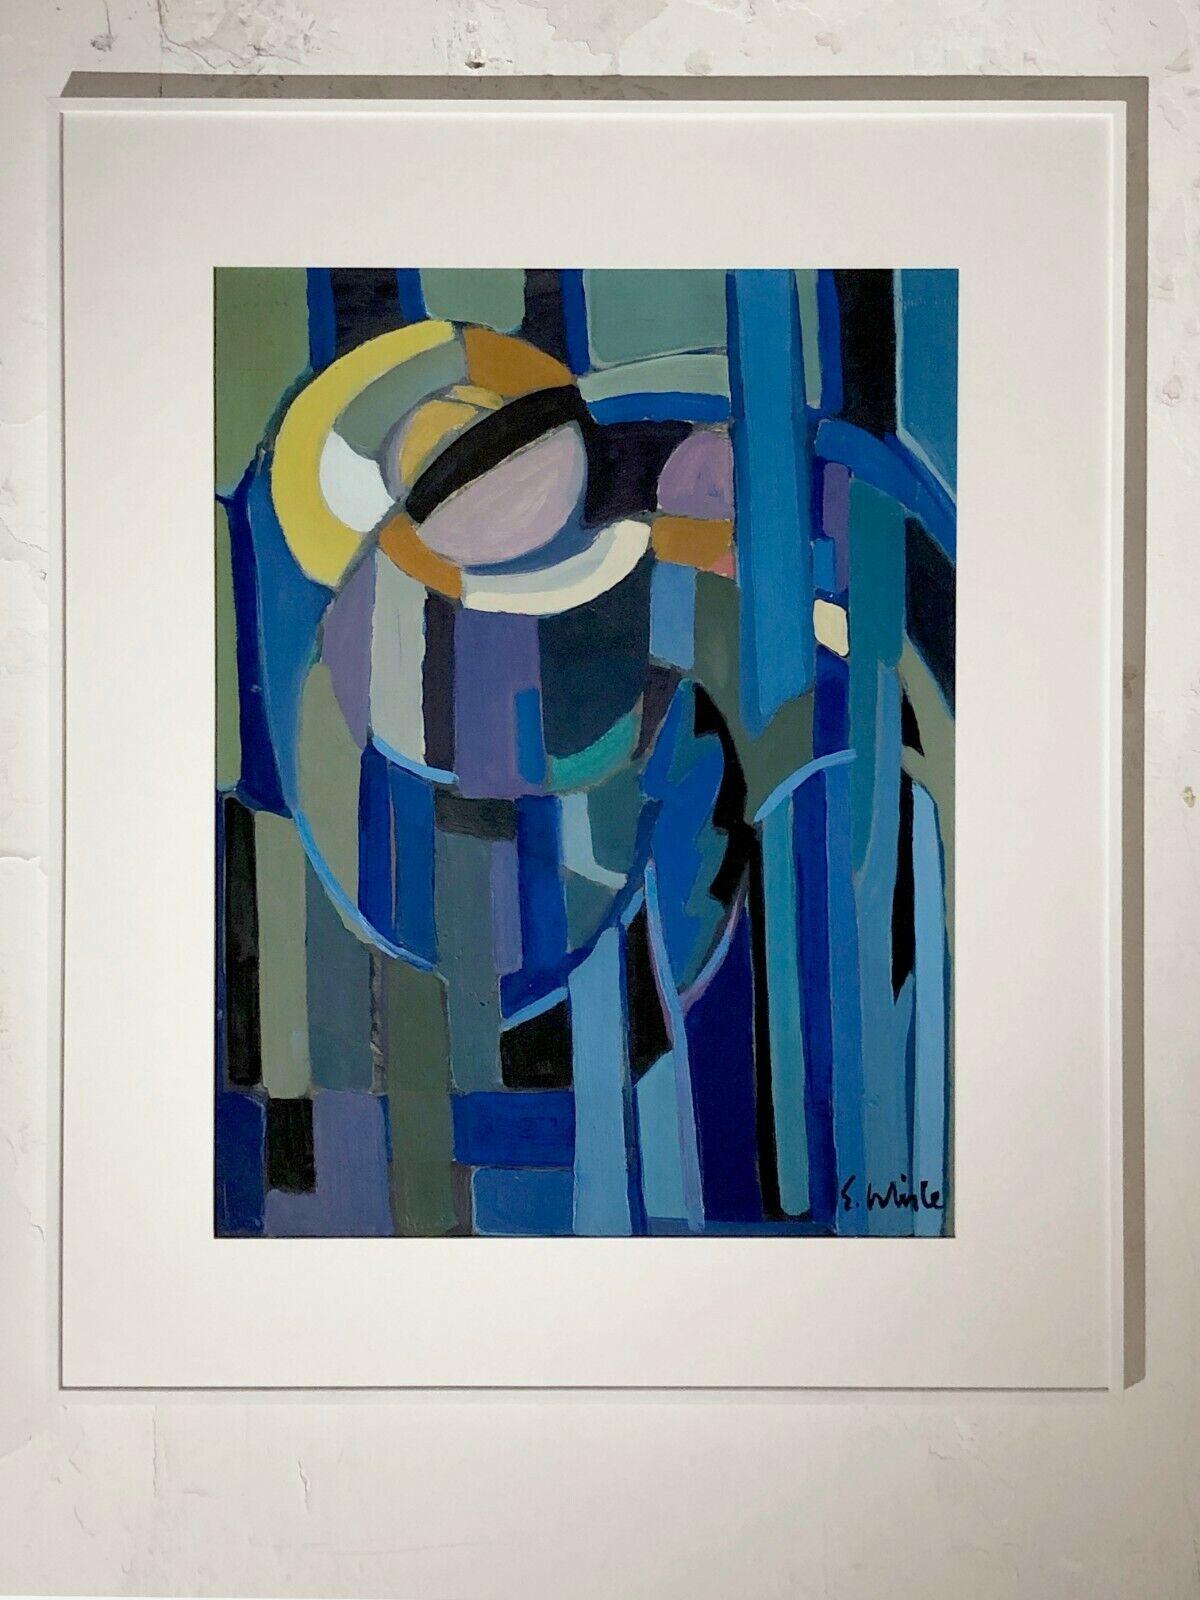 Une peinture authentique, à la fois abstraite et figurative, expressionniste, cubiste, gouache sur papier semblant représenter un paysage nocturne stylisé bleu, peint librement avec une belle combinaison de couleurs bleues et de lignes expressives